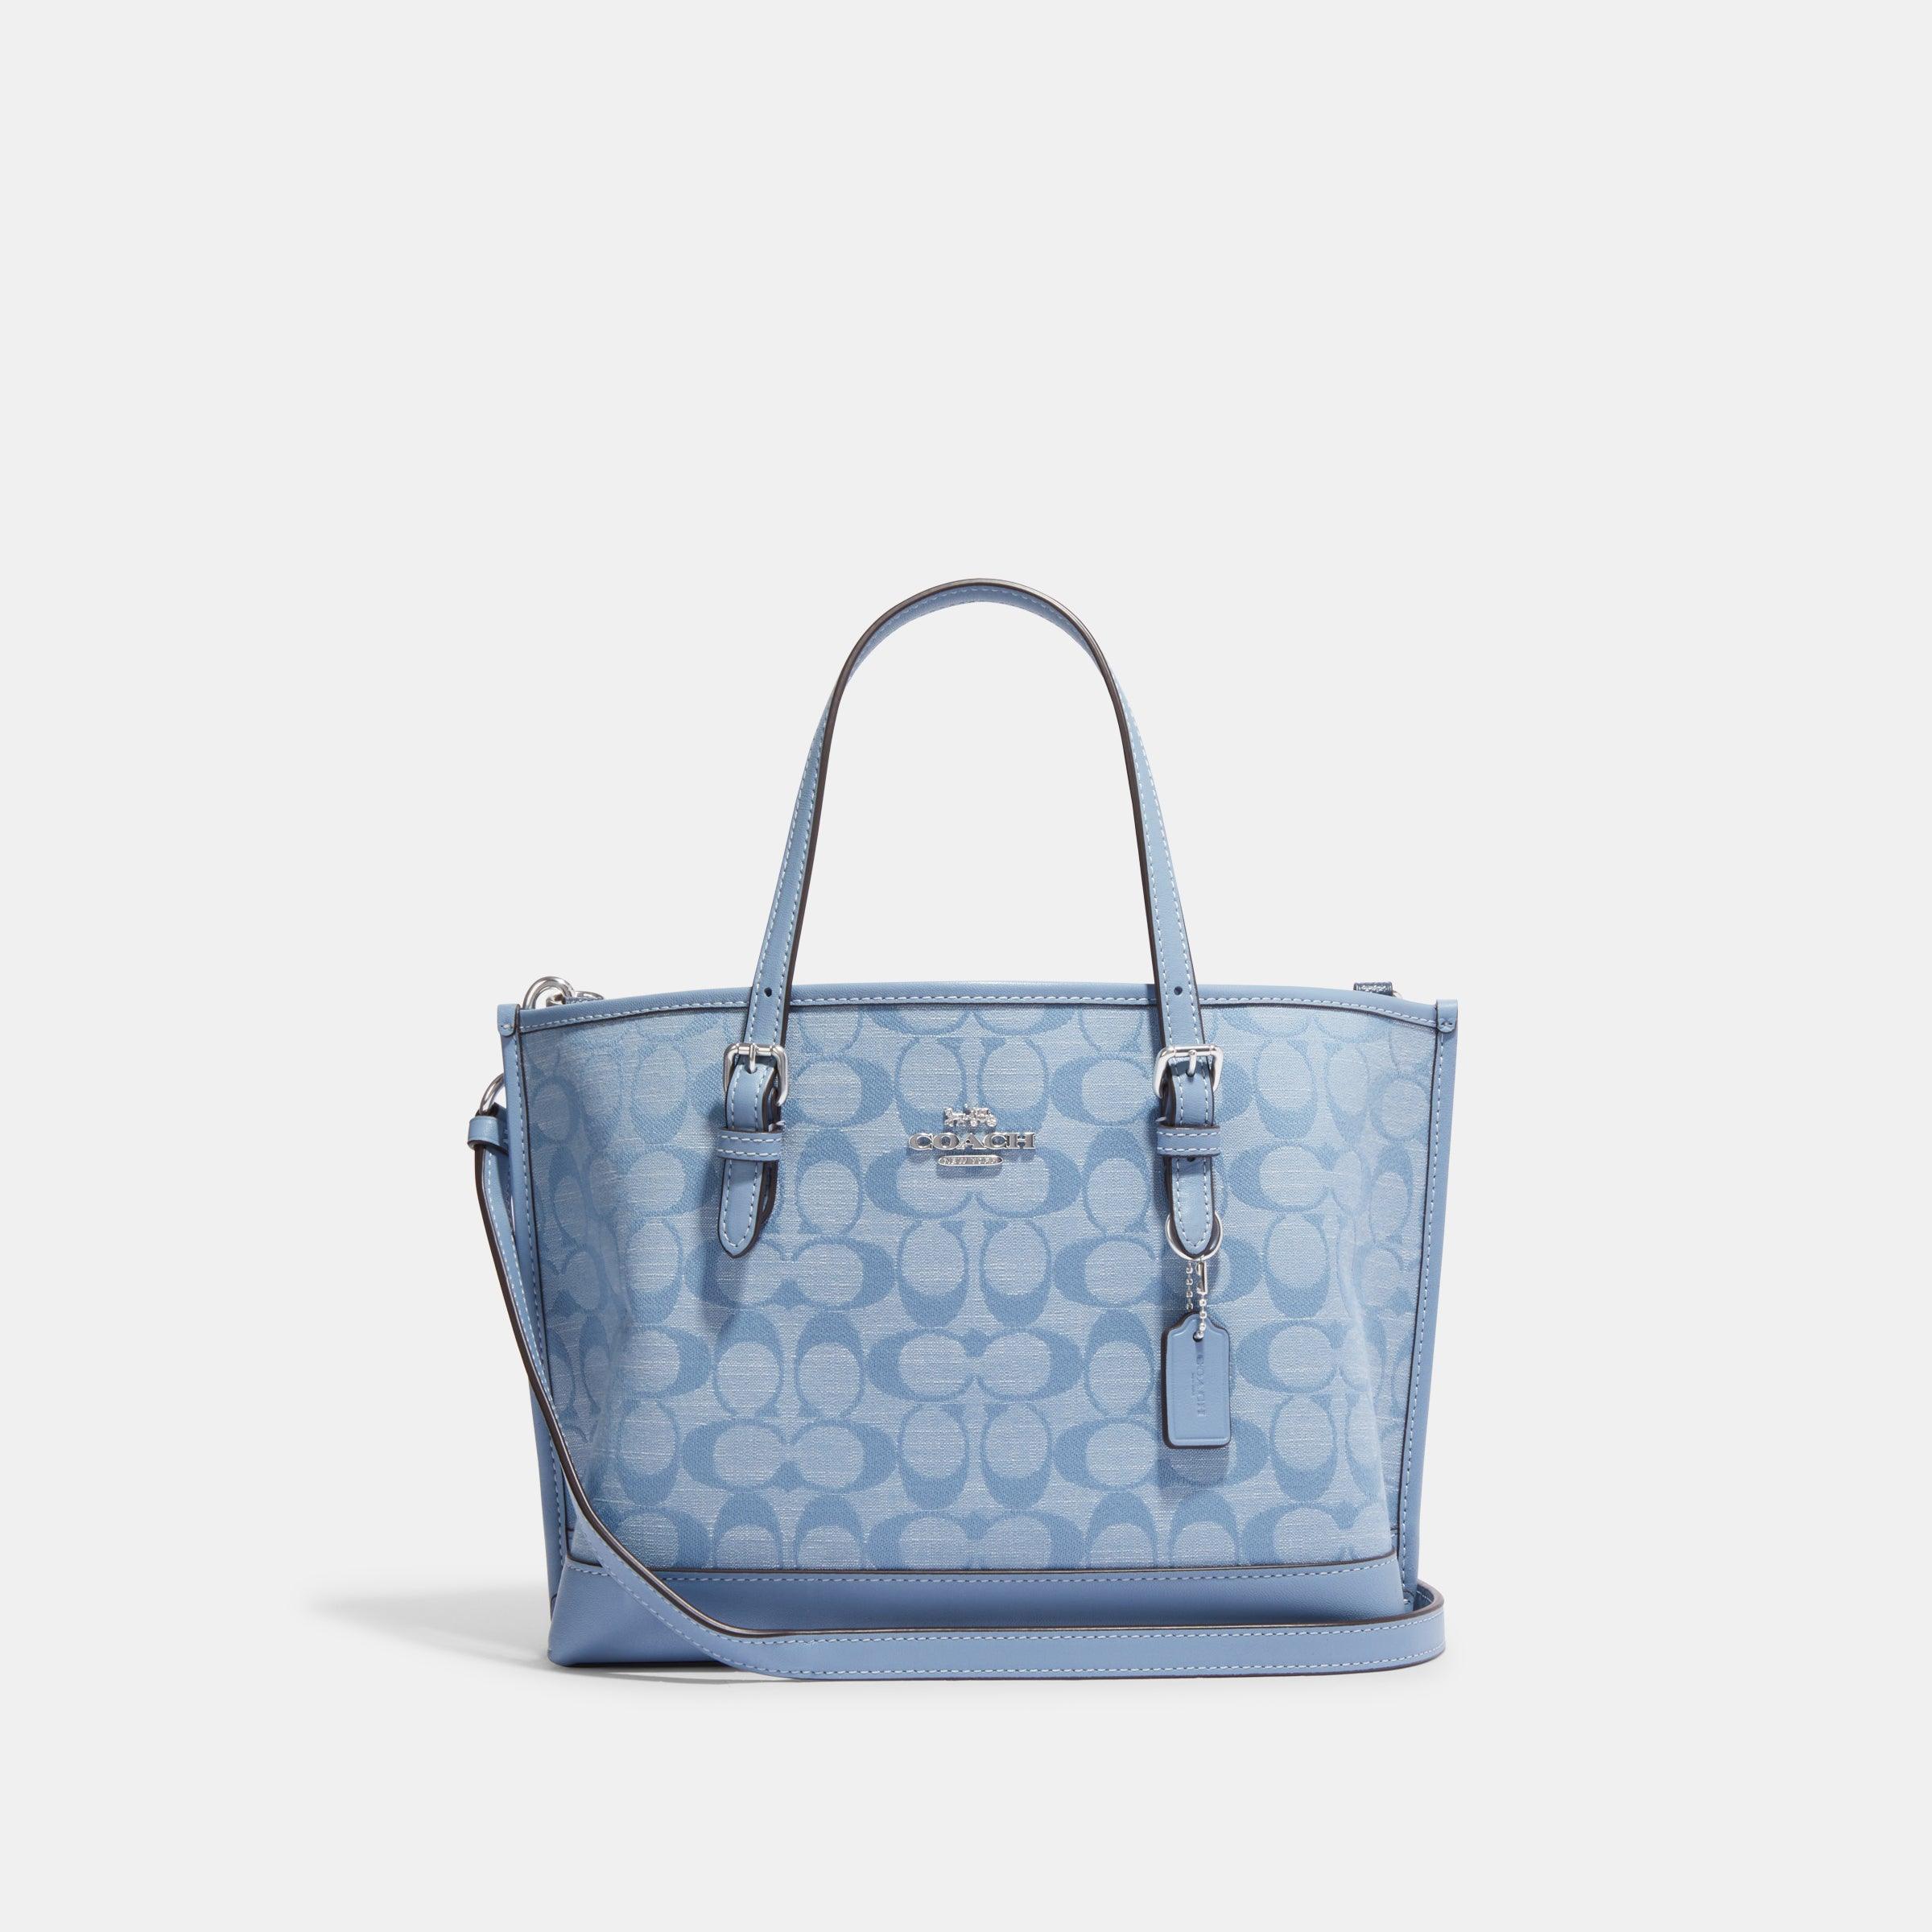 light blue coach purse - Gem